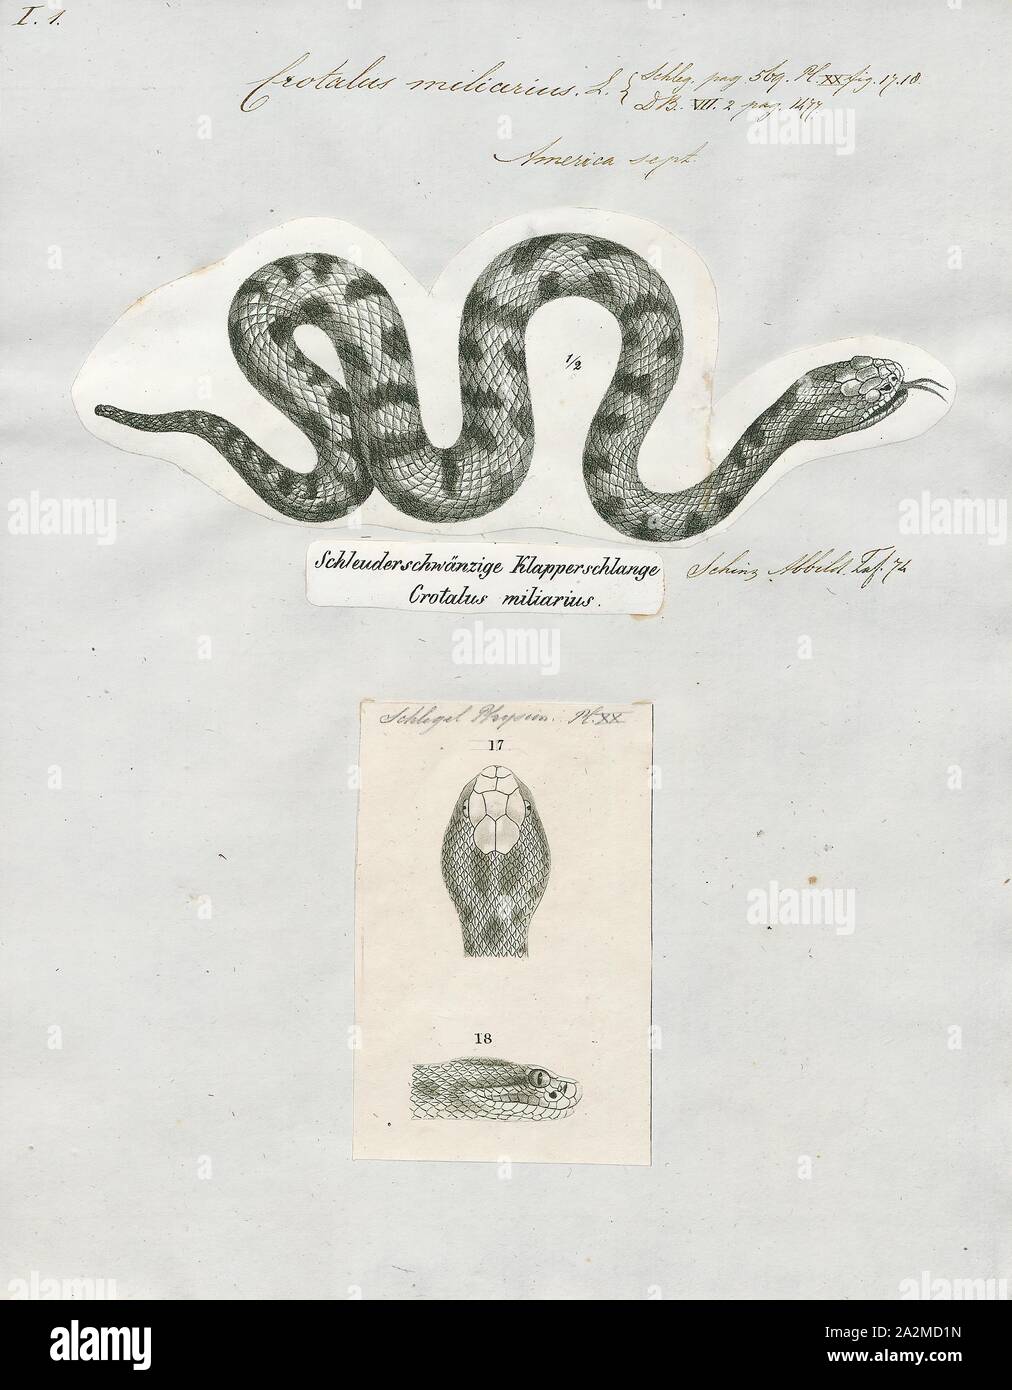 Crotalus miliarius, stampa Sistrurus miliarius, comunemente chiamato rattlesnake pigmeo, è una specie di serpente velenoso nella sottofamiglia Crotalinae (fossa vipere) della famiglia dei Viperidi denominate. La specie è endemica del sud-est degli Stati Uniti. Tre sottospecie sono attualmente riconosciuti, ivi compresa la nomina di sottospecie descritto qui., 1700-1880 Foto Stock